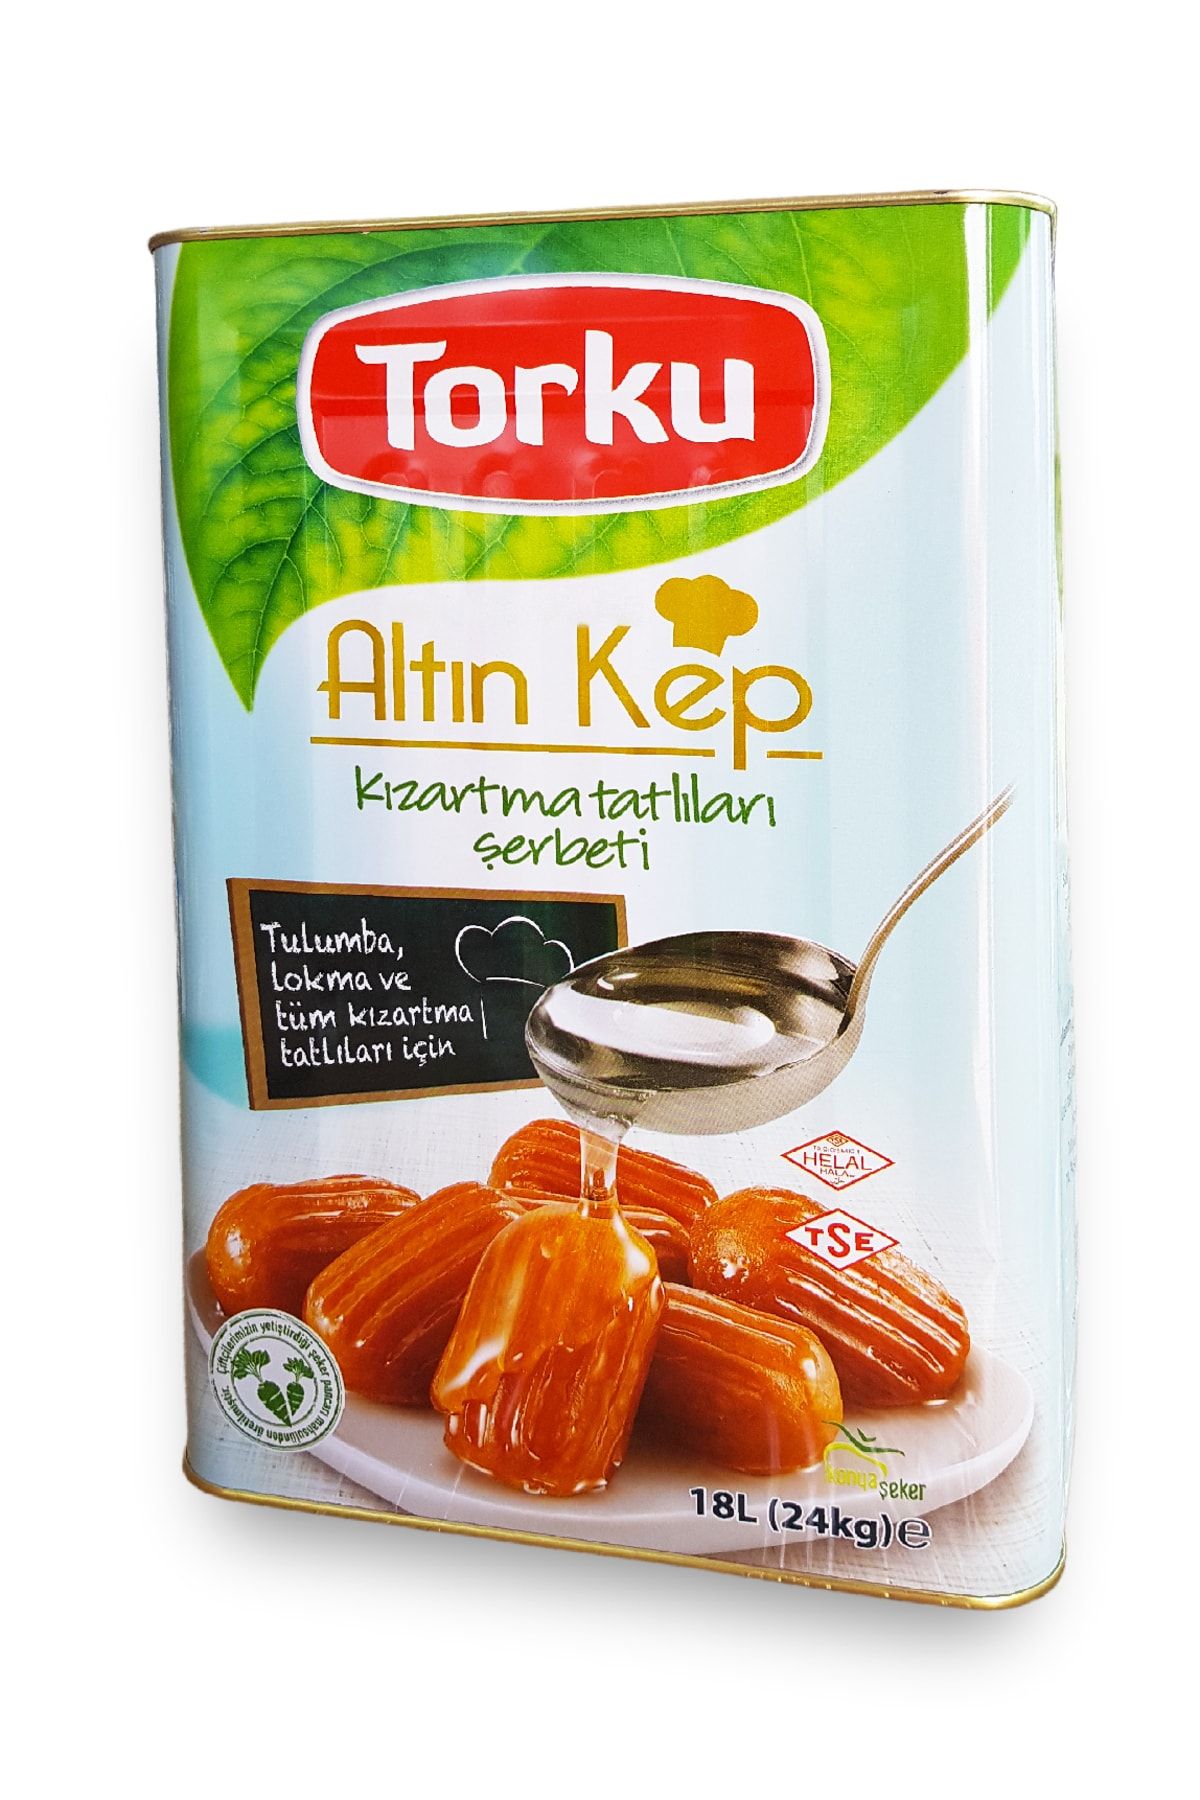 Torku Altın Kep Tulumba Ve Kızartma Tatlıları Şerbeti - 24 kg.